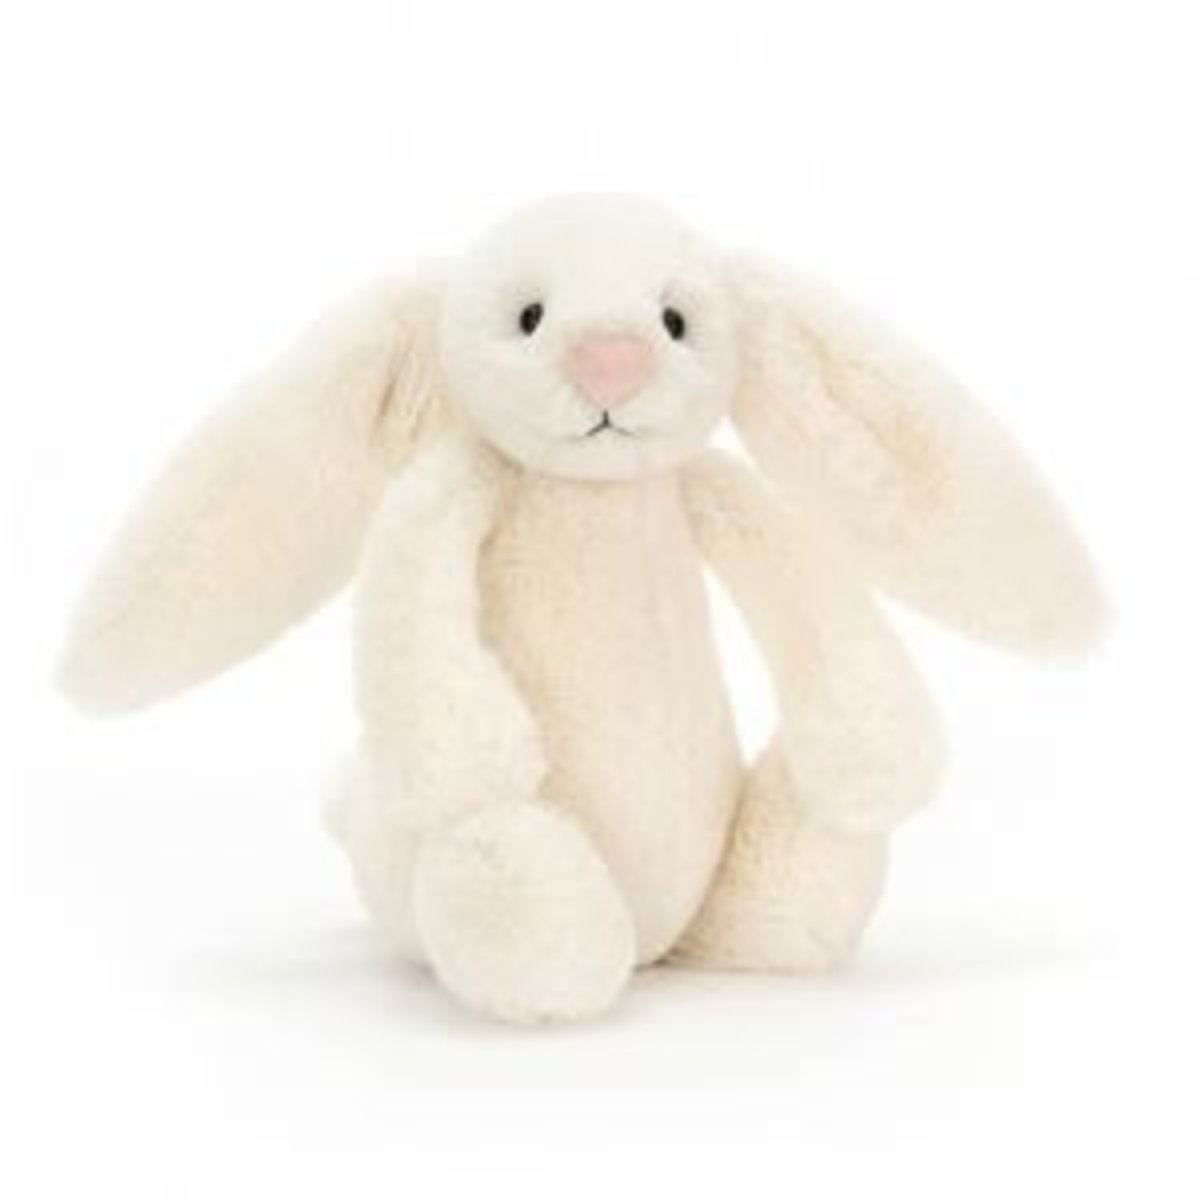 害羞賓尼兔系列 賓尼兔公仔 - 奶油色 (細碼)